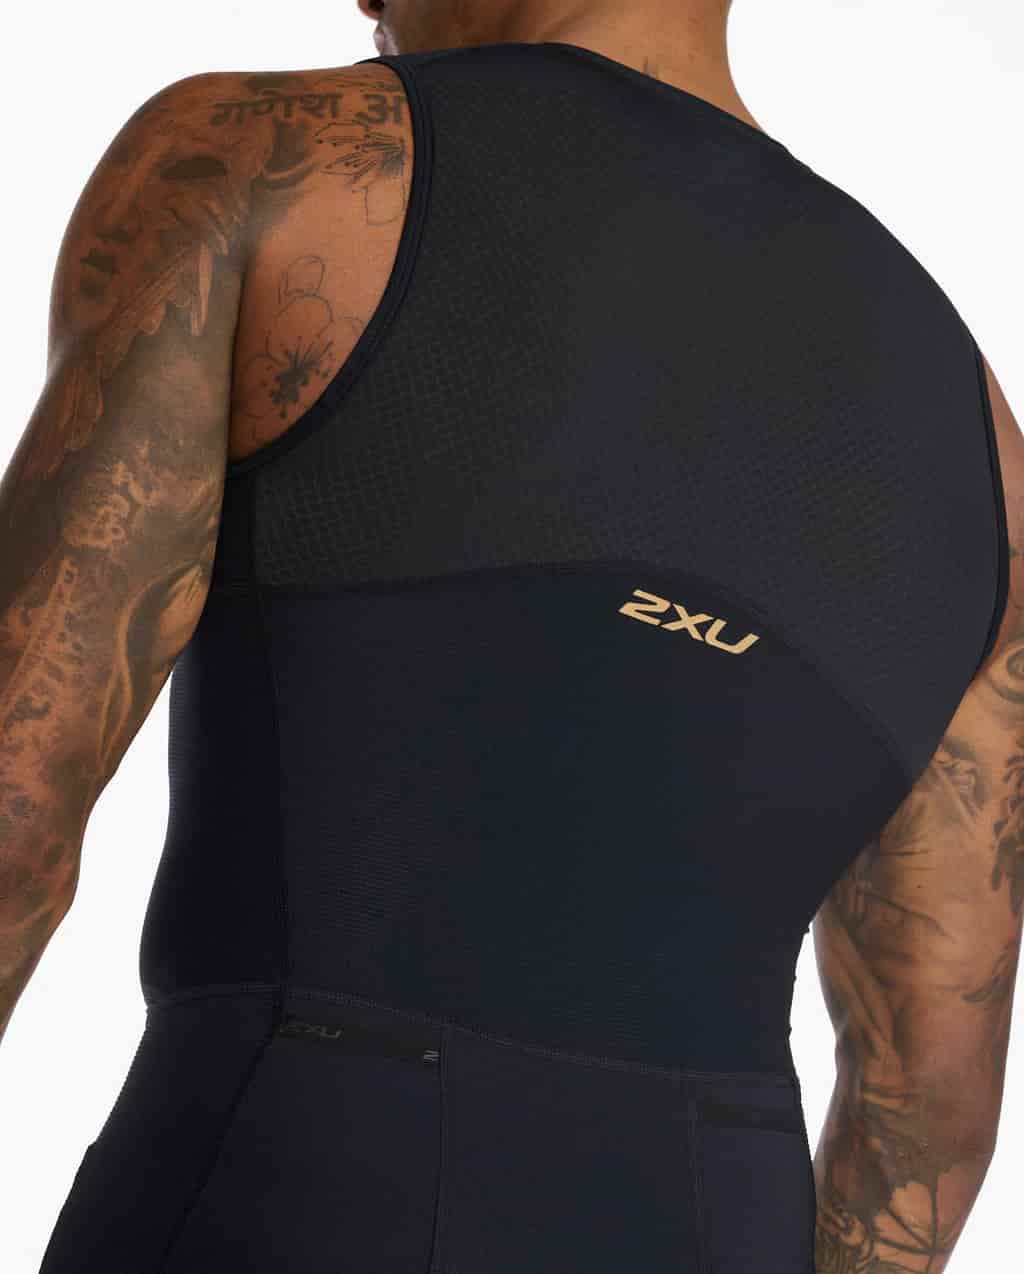 2xu Men's Light Speed Front Zip Trisuit Black/Gold